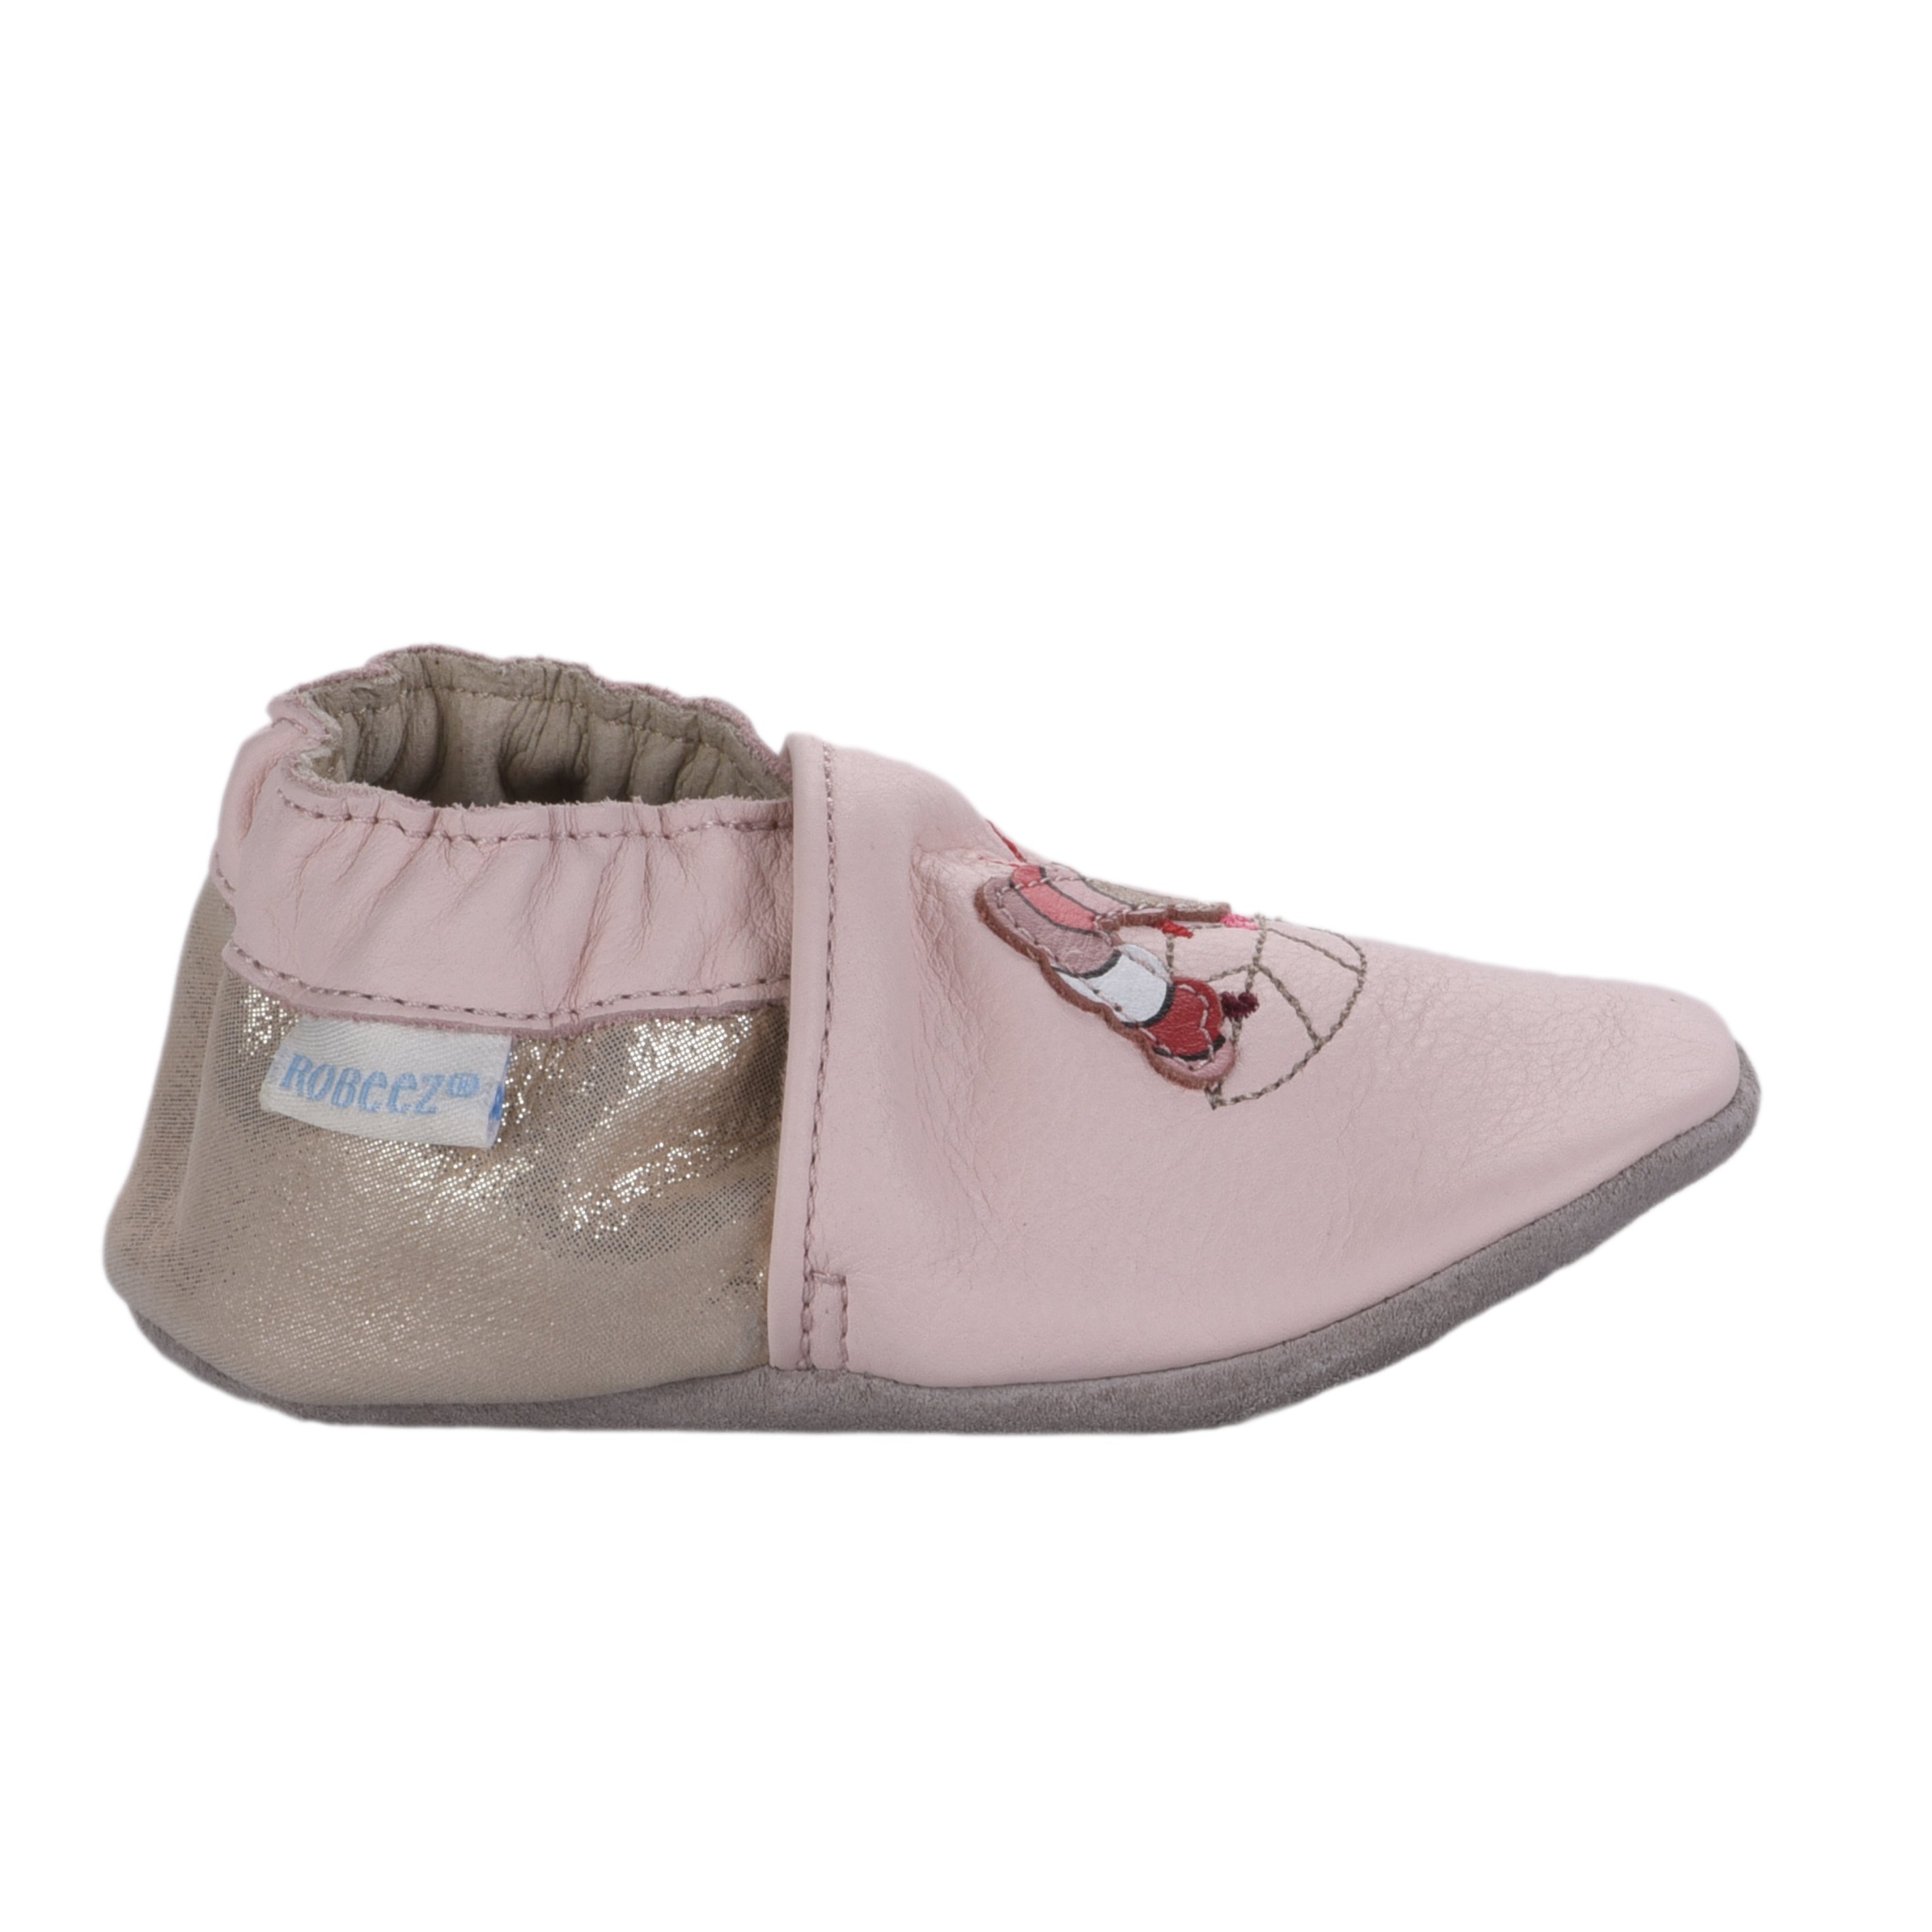 Chaussons et chaussures bébés filles - Retour gratuit - Official ® Robeez  (2)